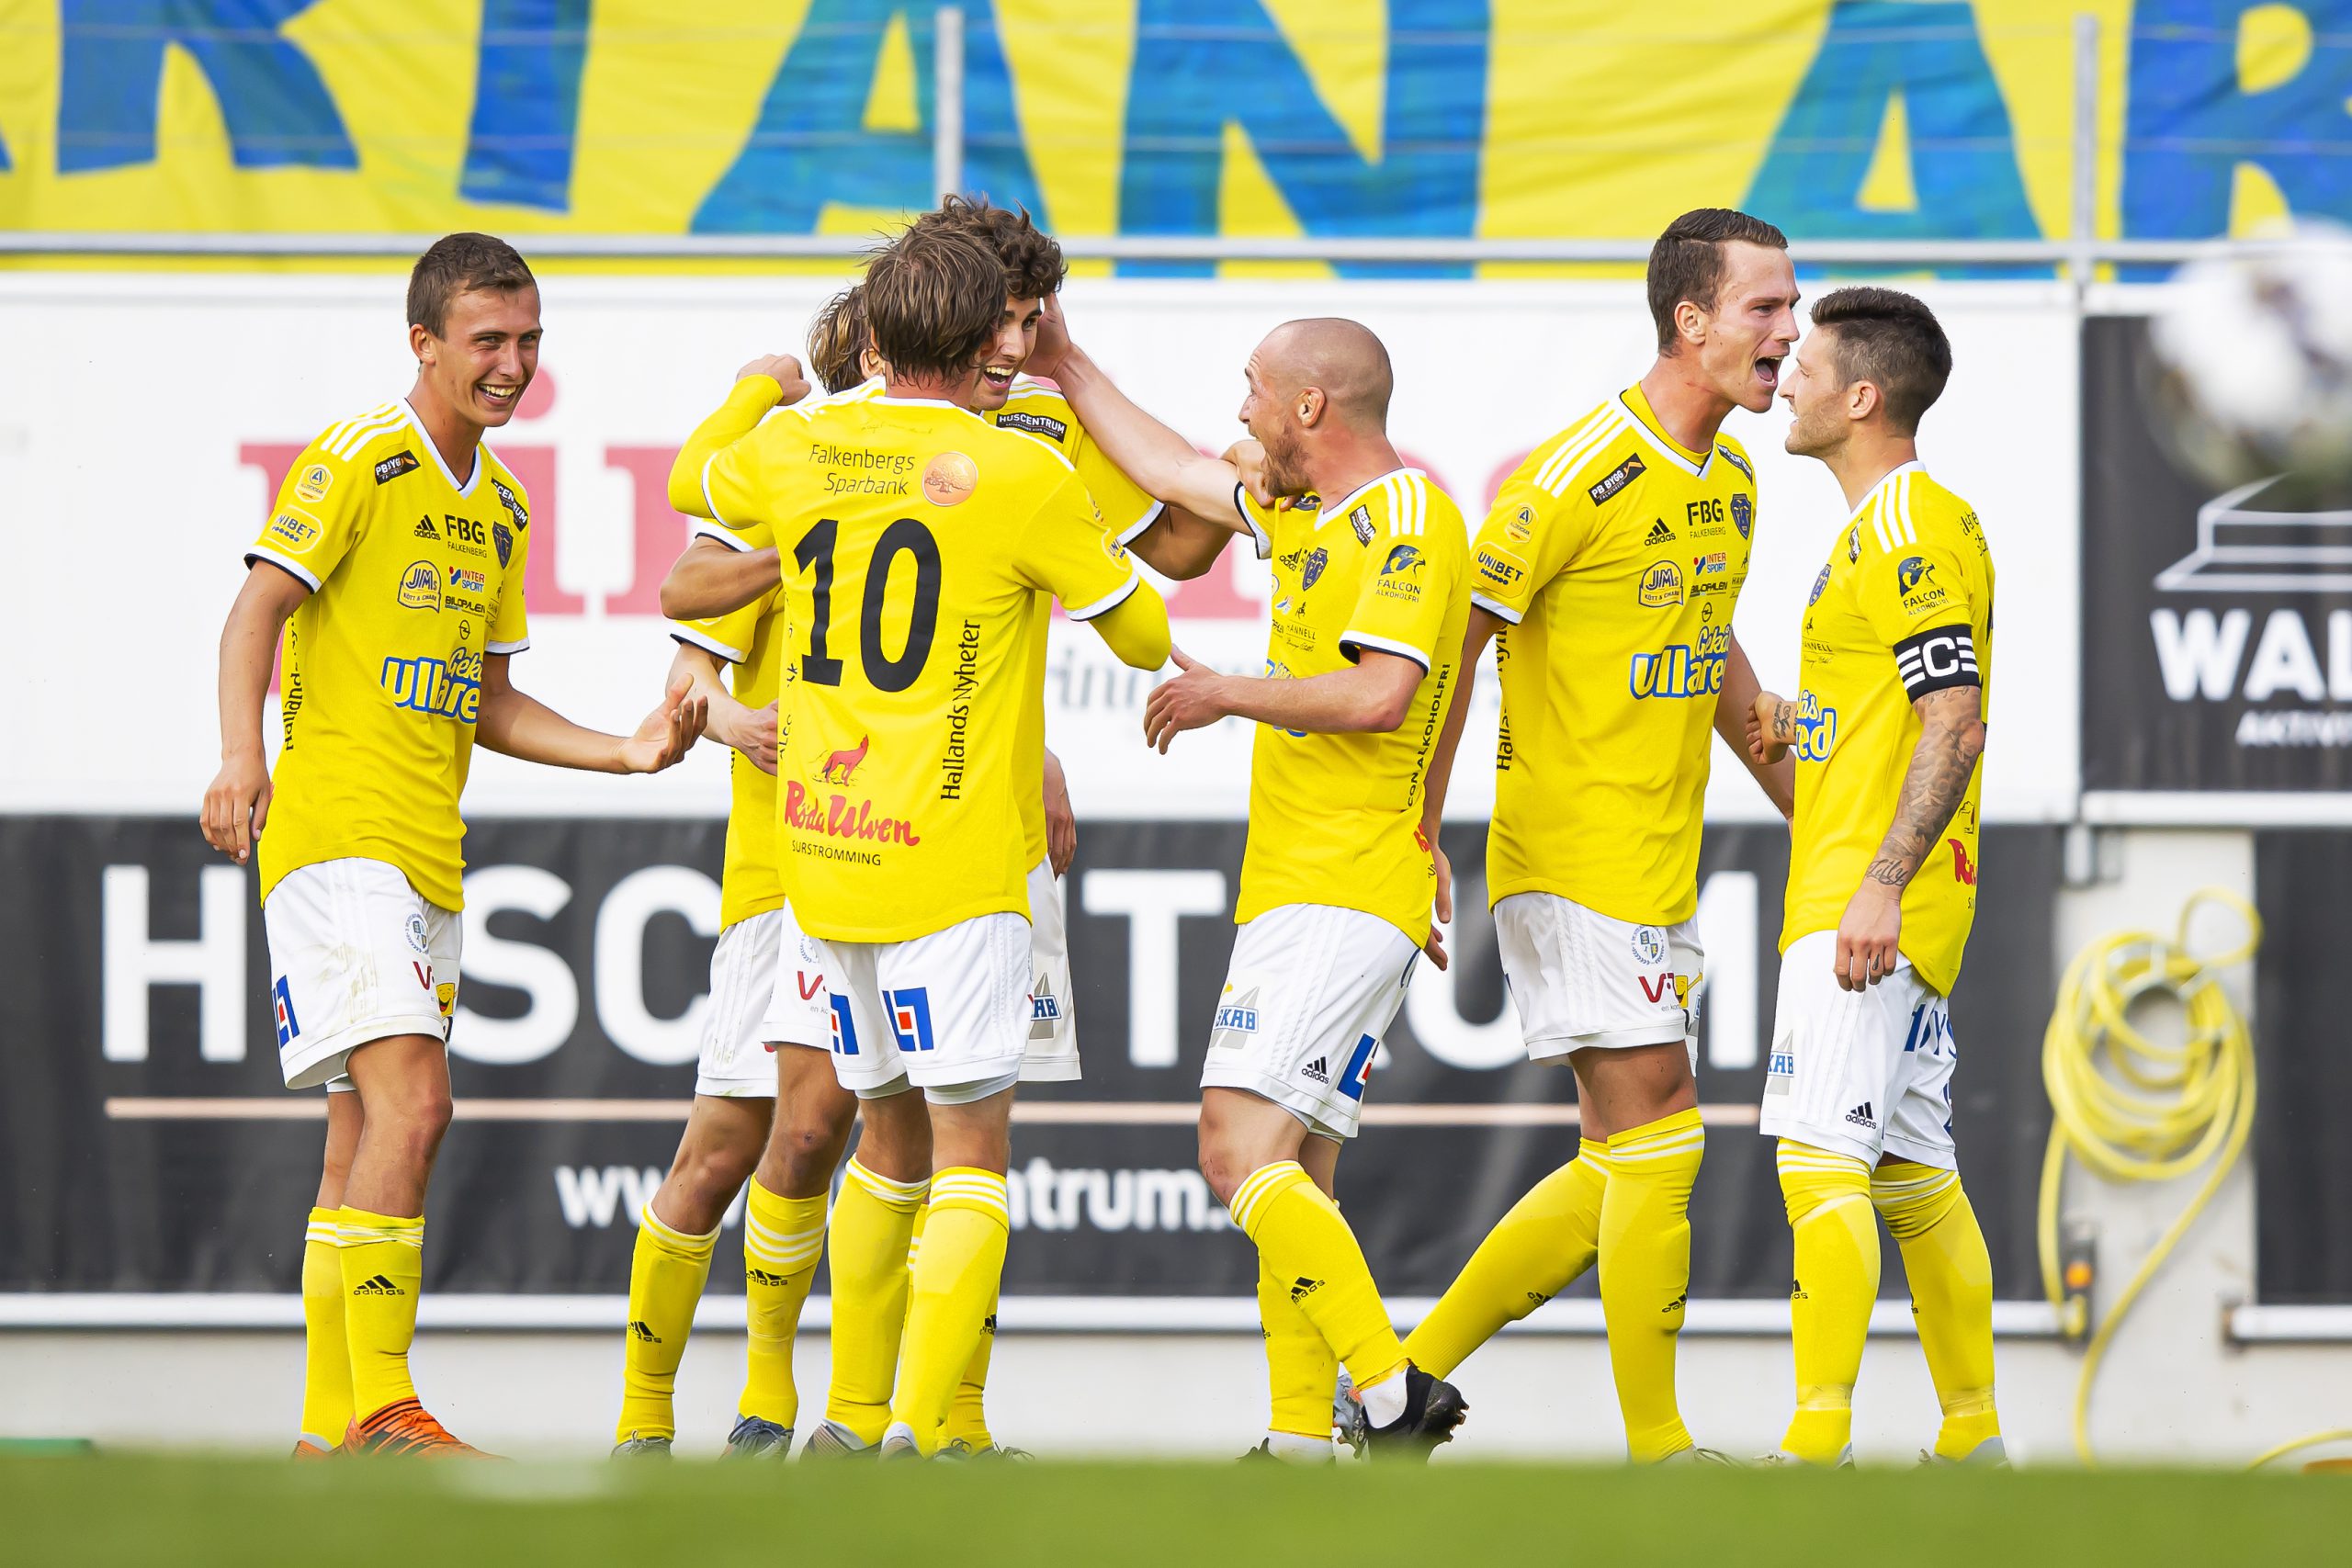 Underbar seger i Örebro: ”Vi ville verkligen vinna”